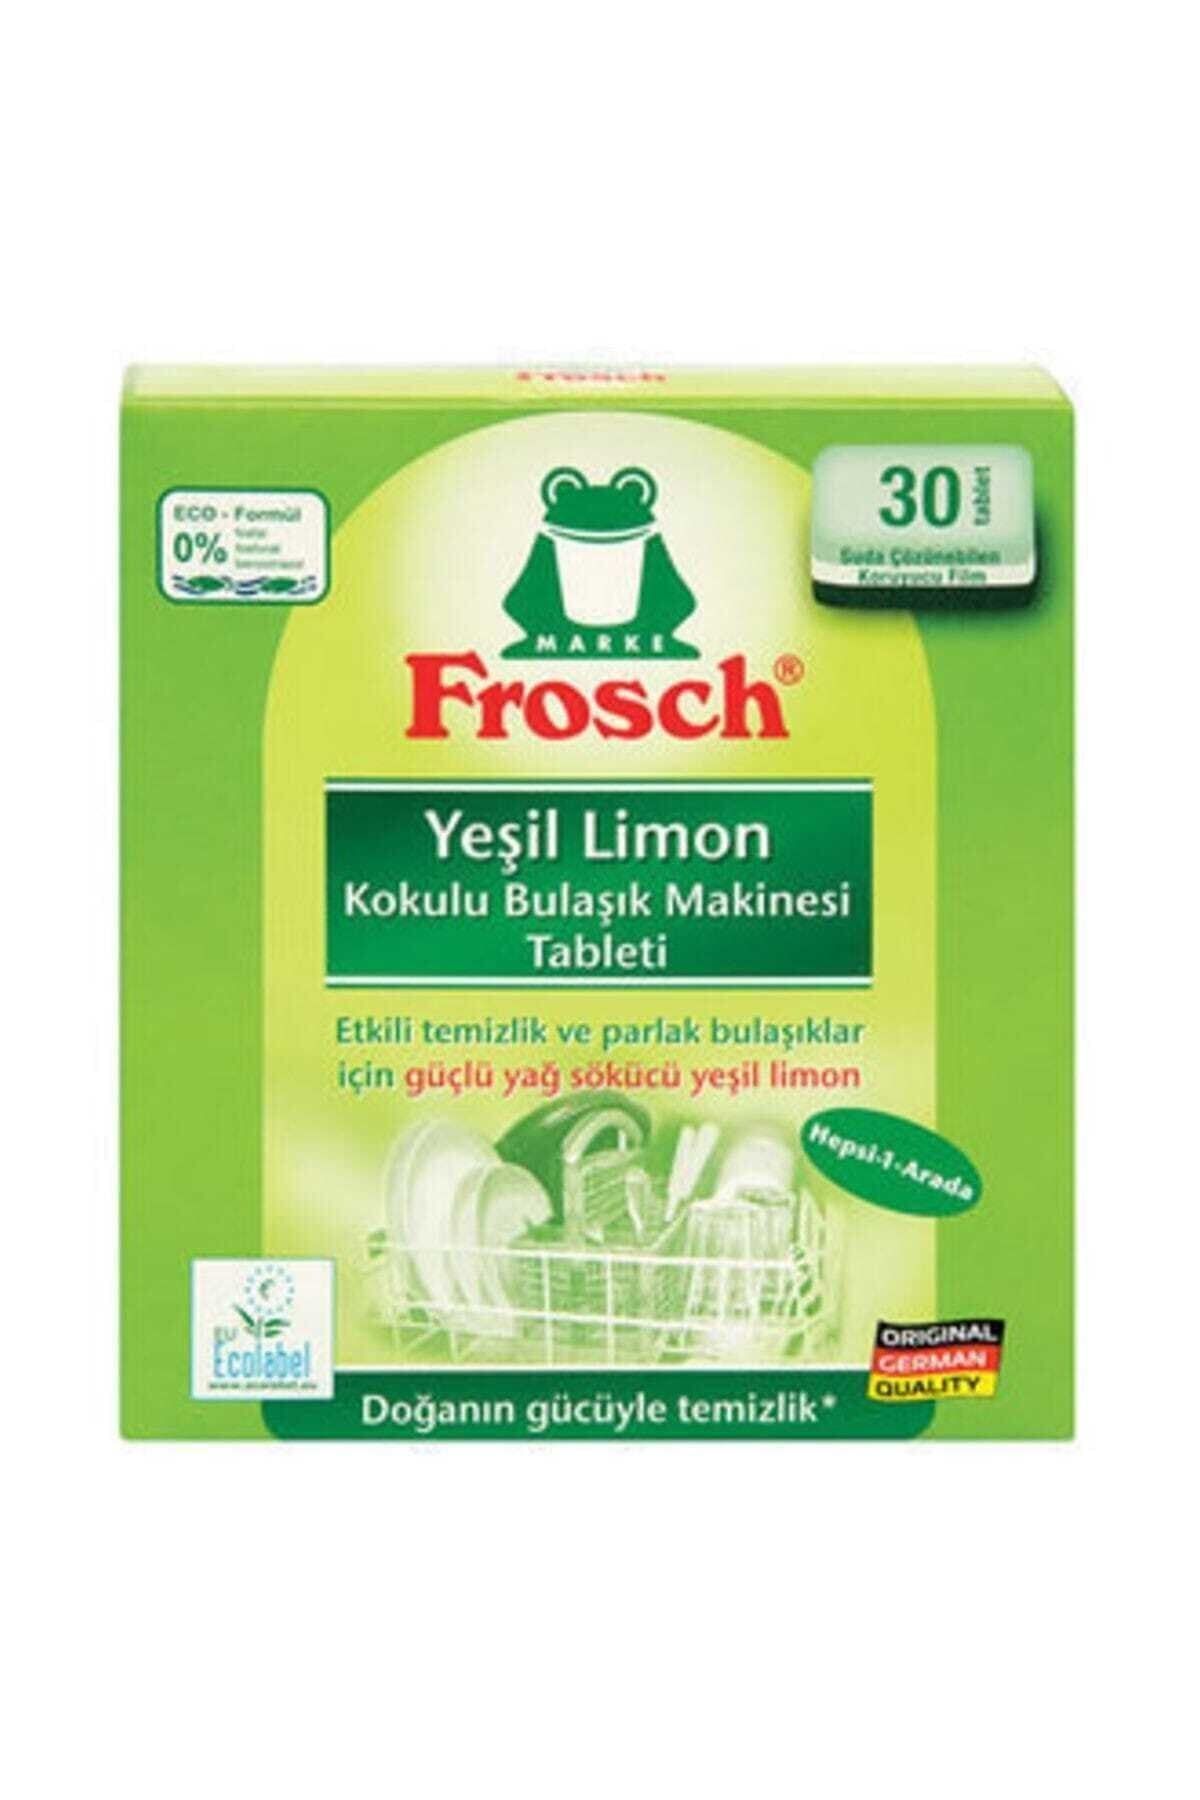 Frosch Yeşil Limon Kokulu Bulaşık Makinesi Tableti 30 Tablet